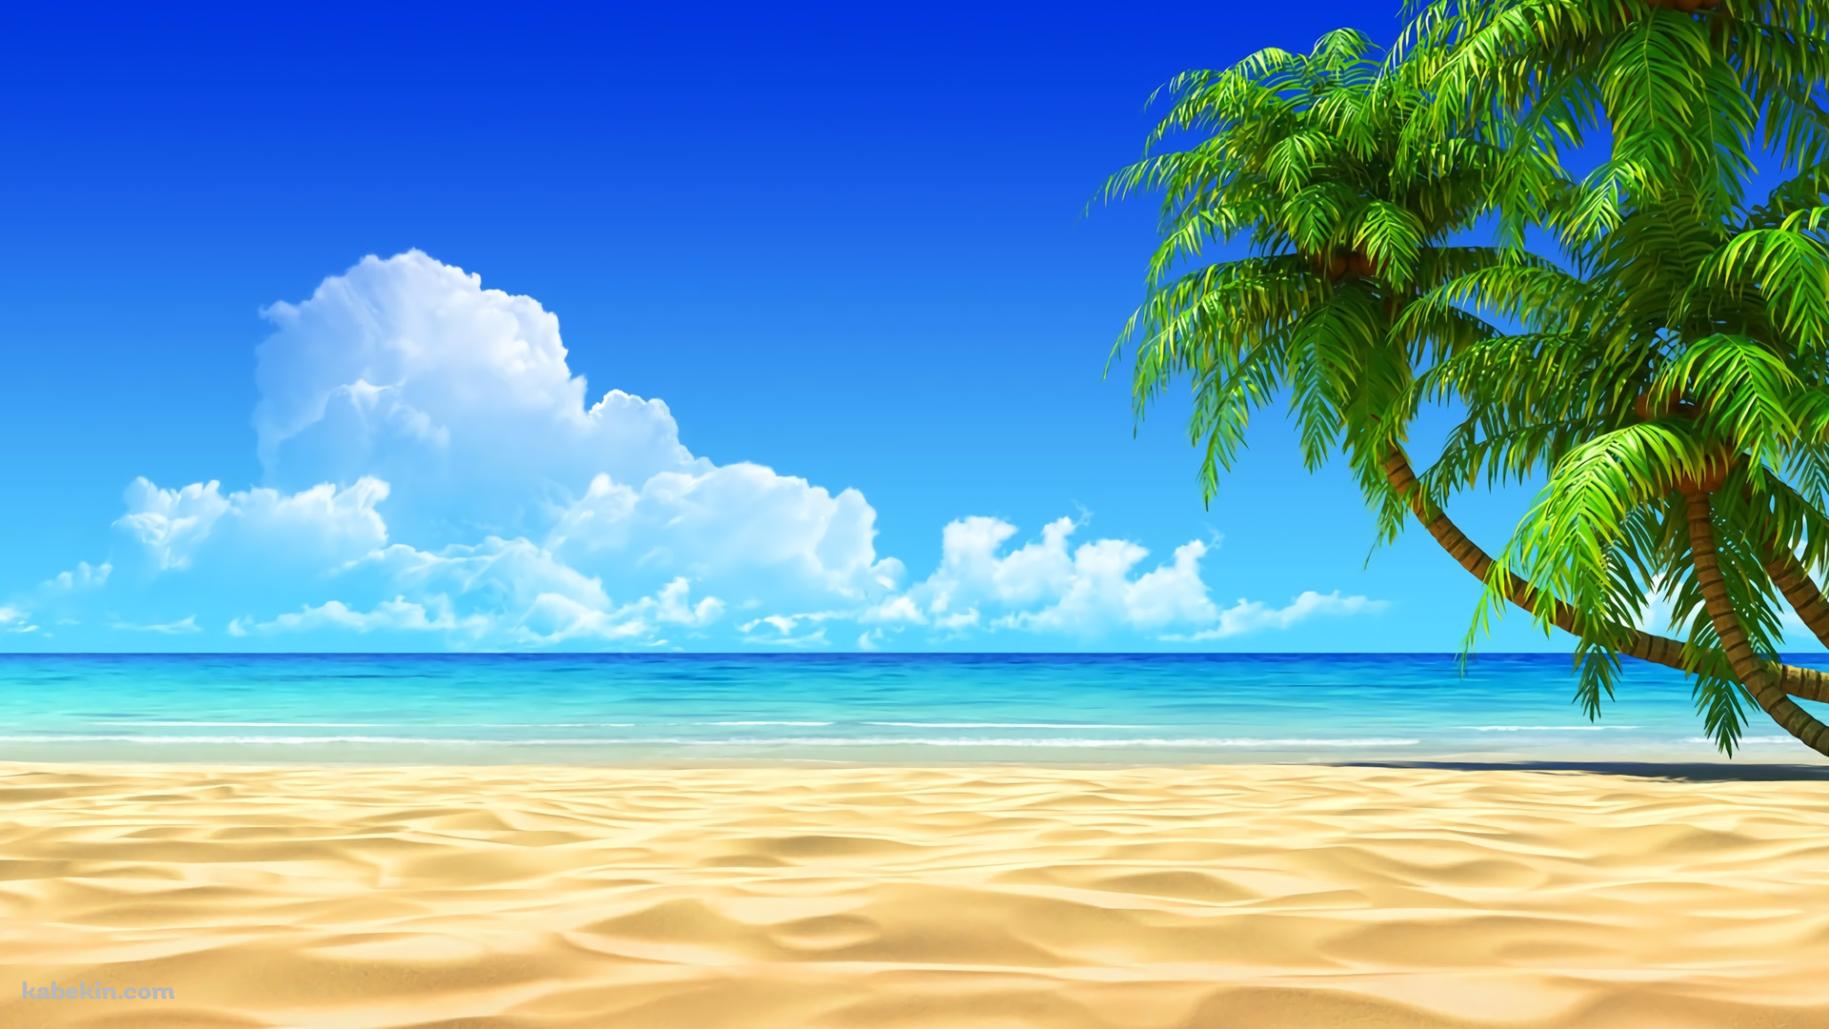 夏 SUMMER ビーチ 椰子の木 青空の壁紙(1829px x 1029px) 高画質 PC・デスクトップ用